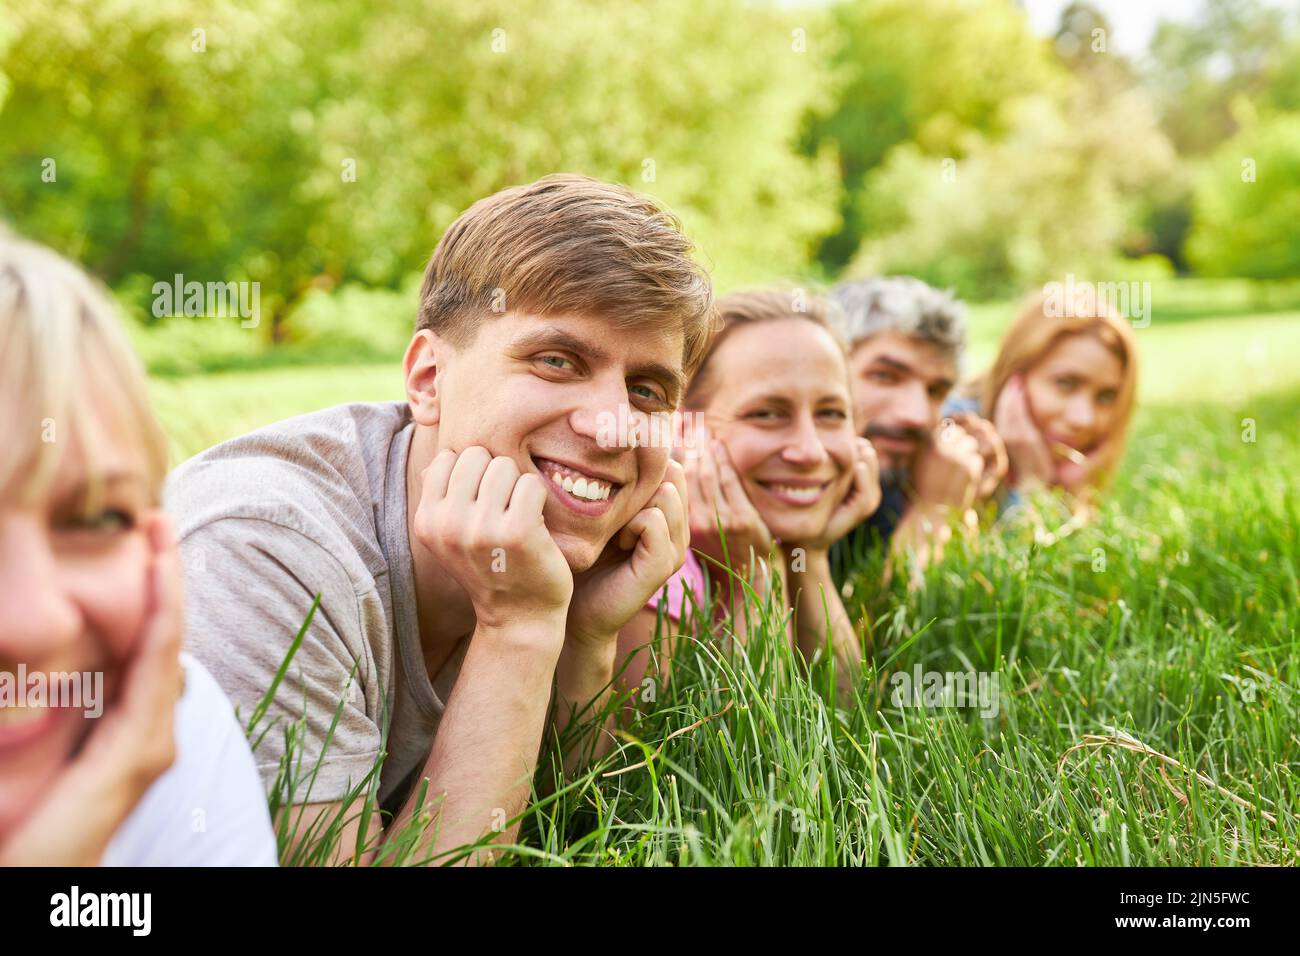 Lächelnder junger Mann, der entspannt mit seinen Freunden auf einer Wiese liegt Stockfoto